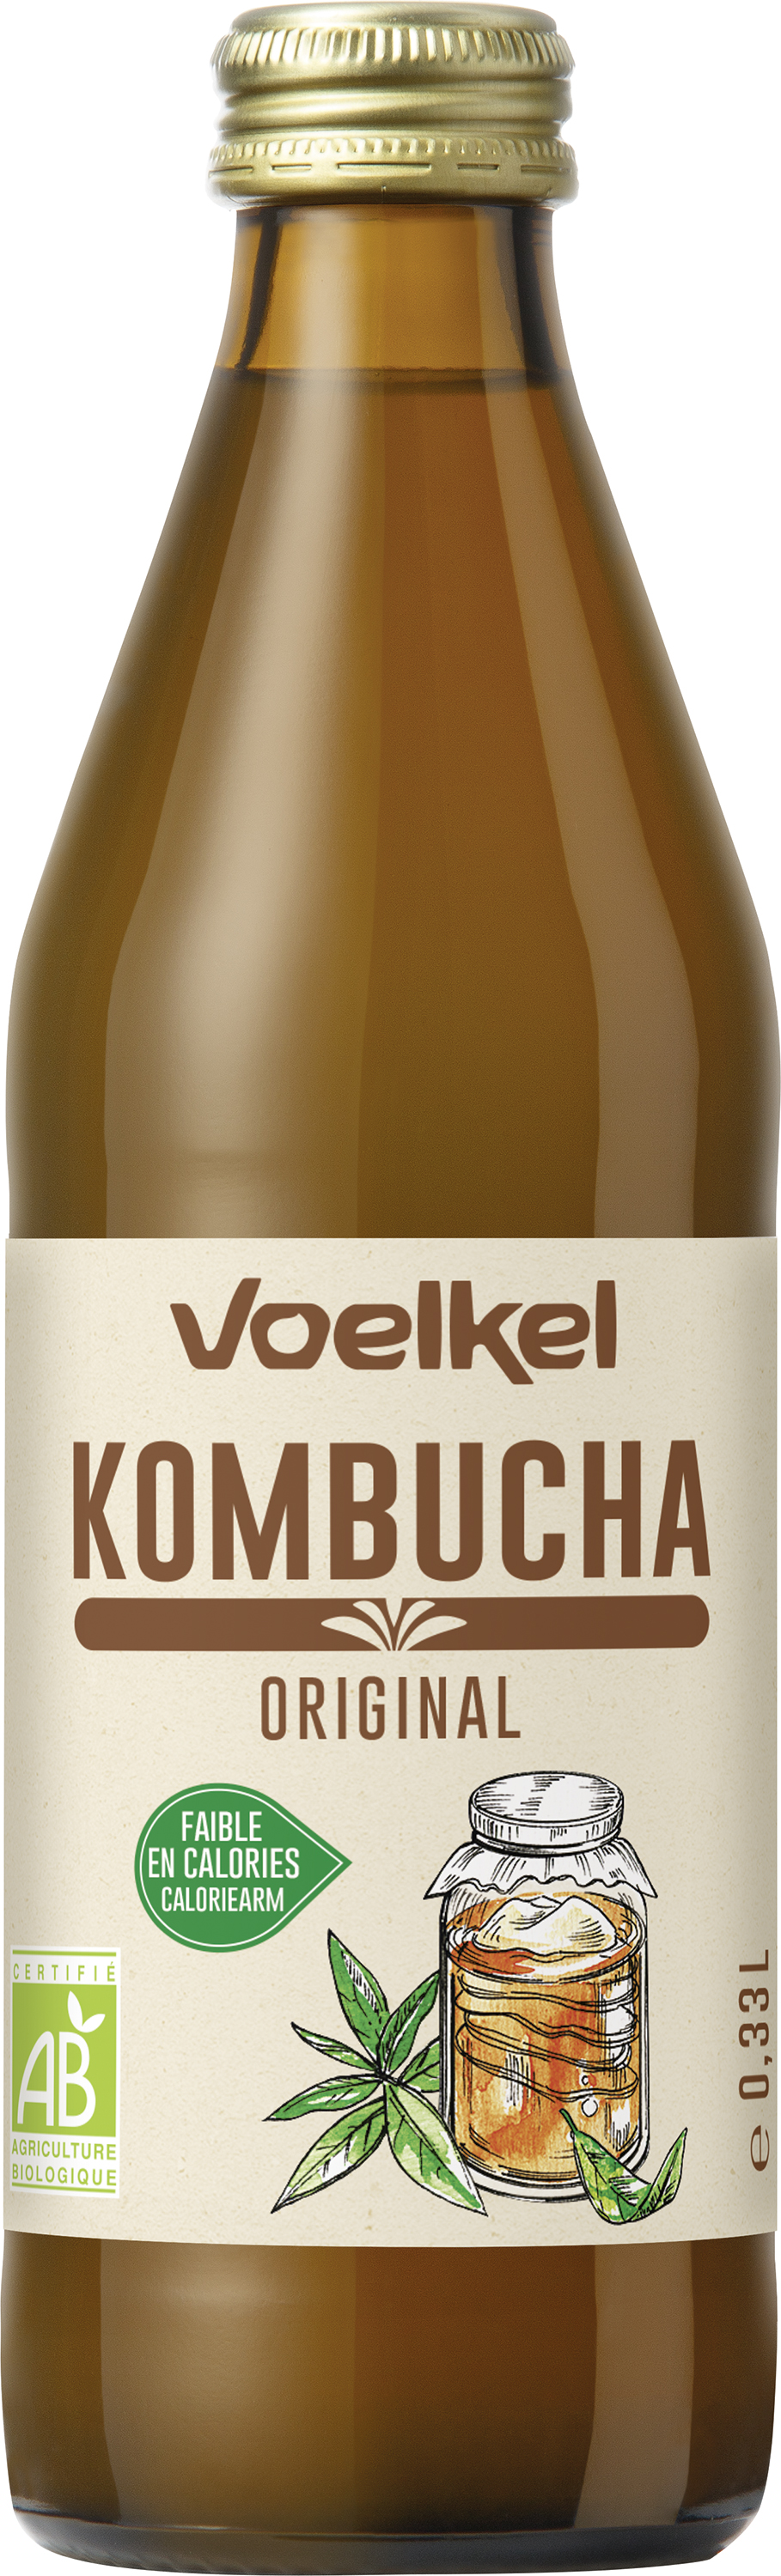 Voelkel Kombucha original bio 330ml